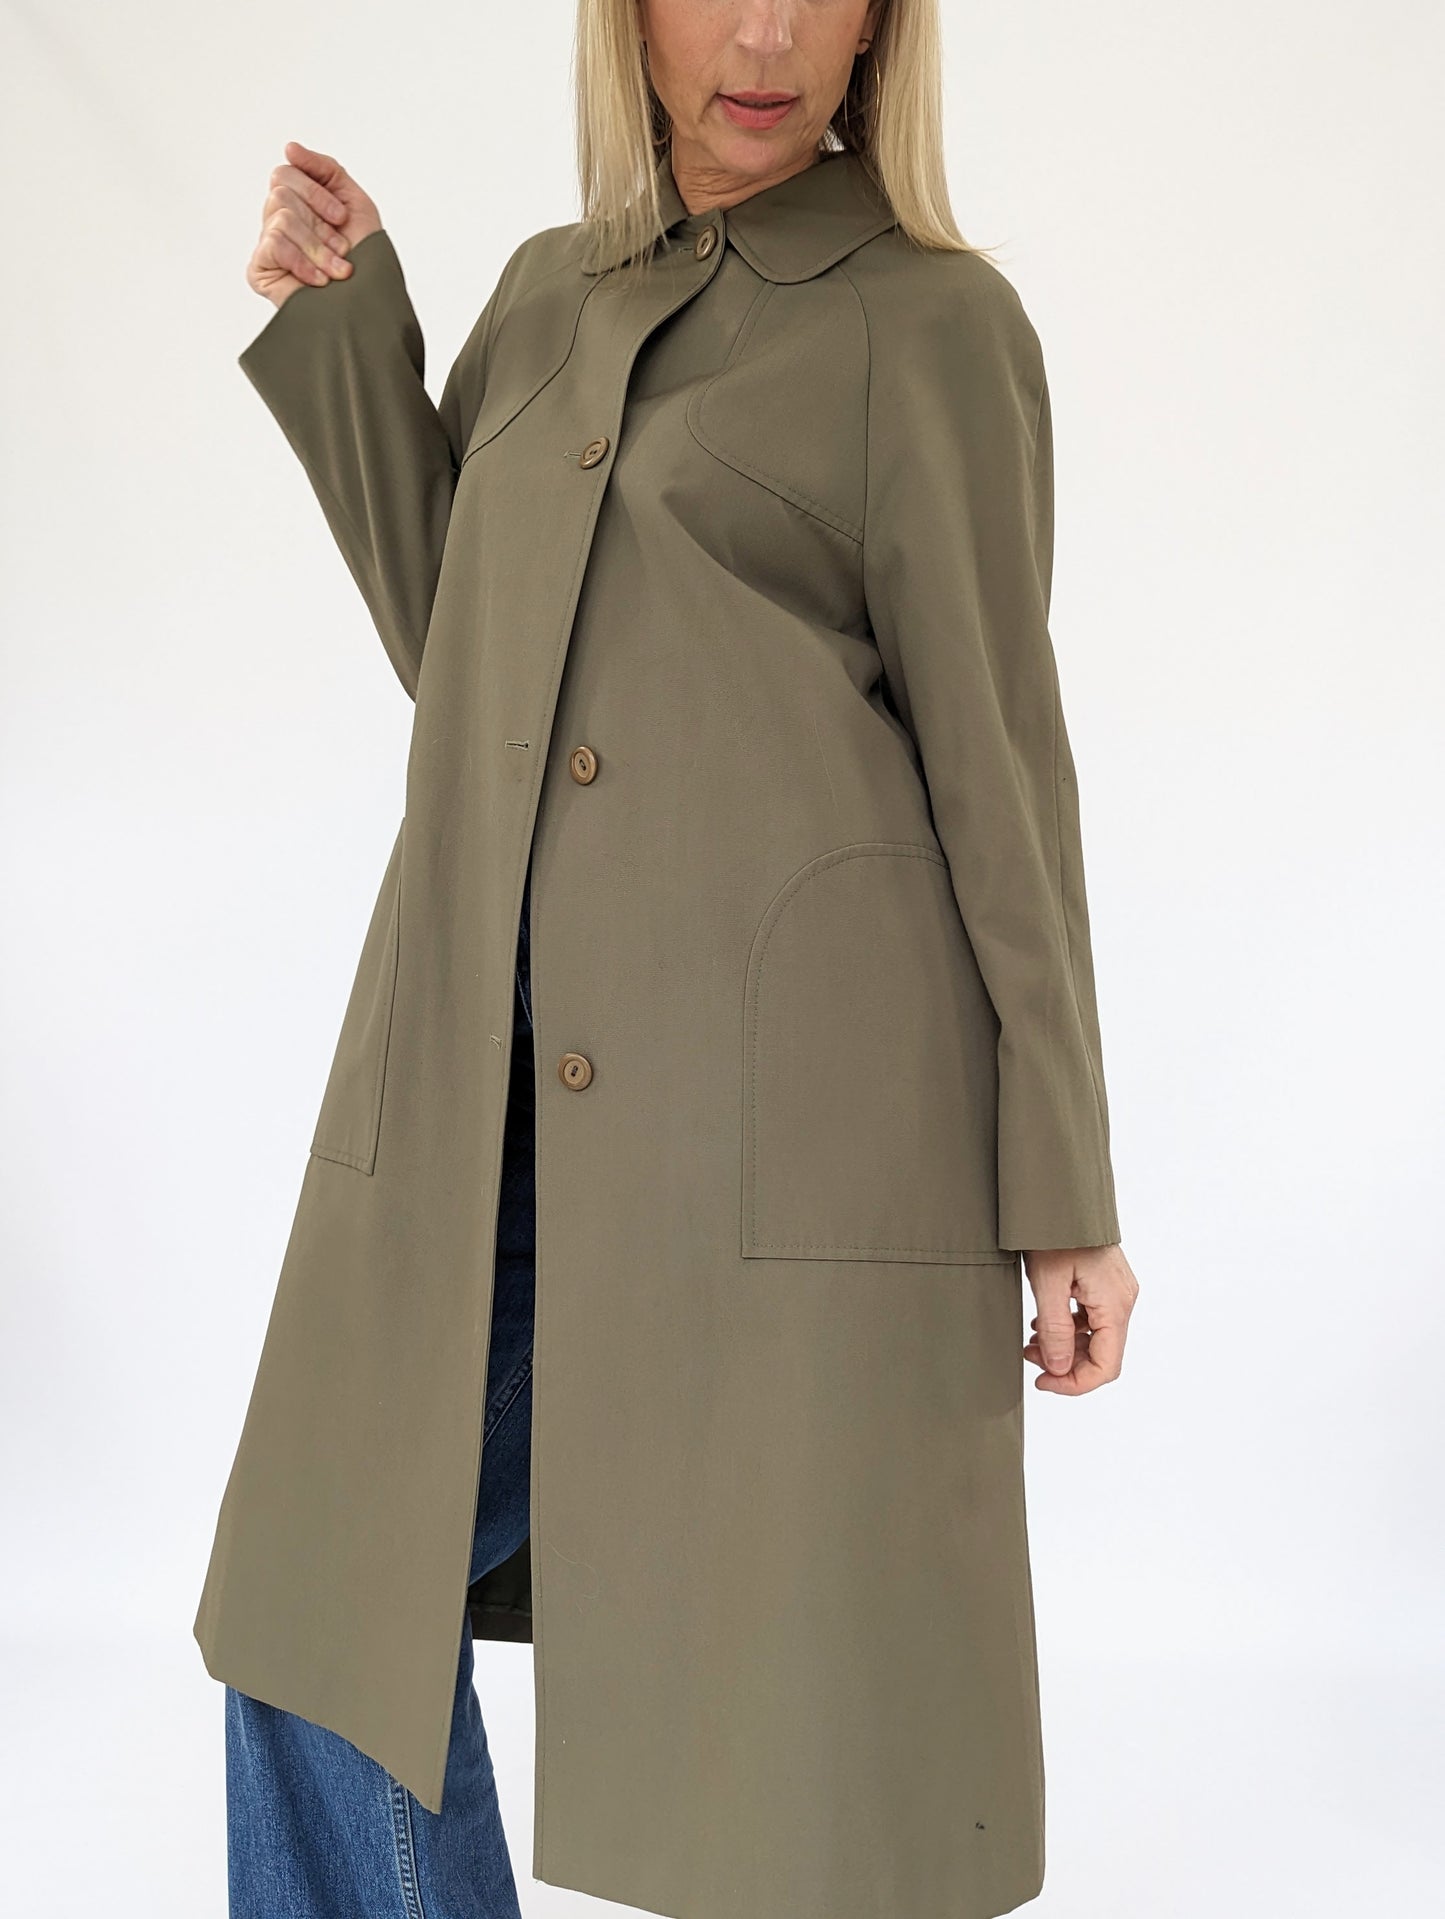 women's 1980s trench coat